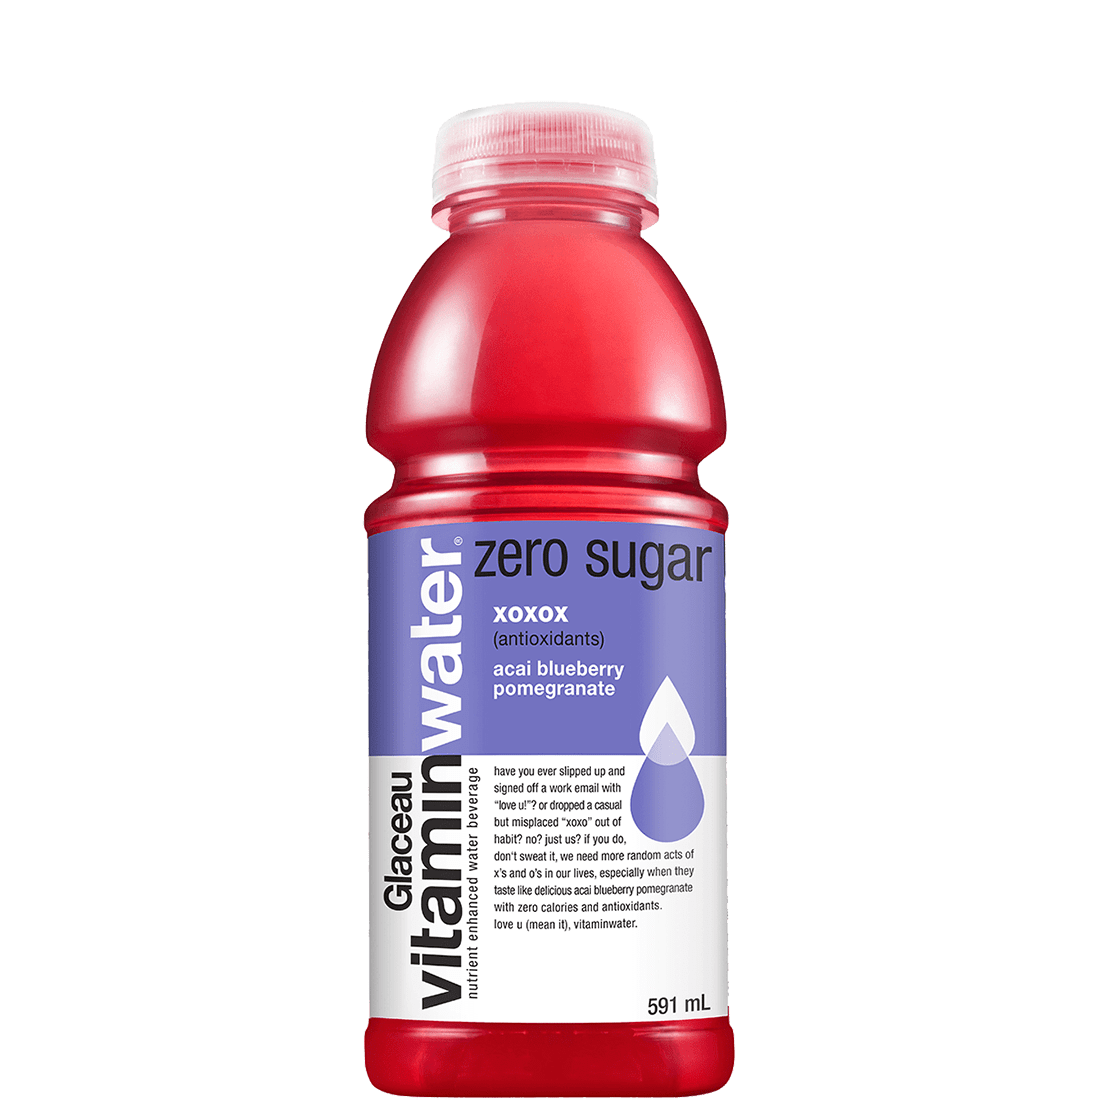 vitaminwater zero sugar